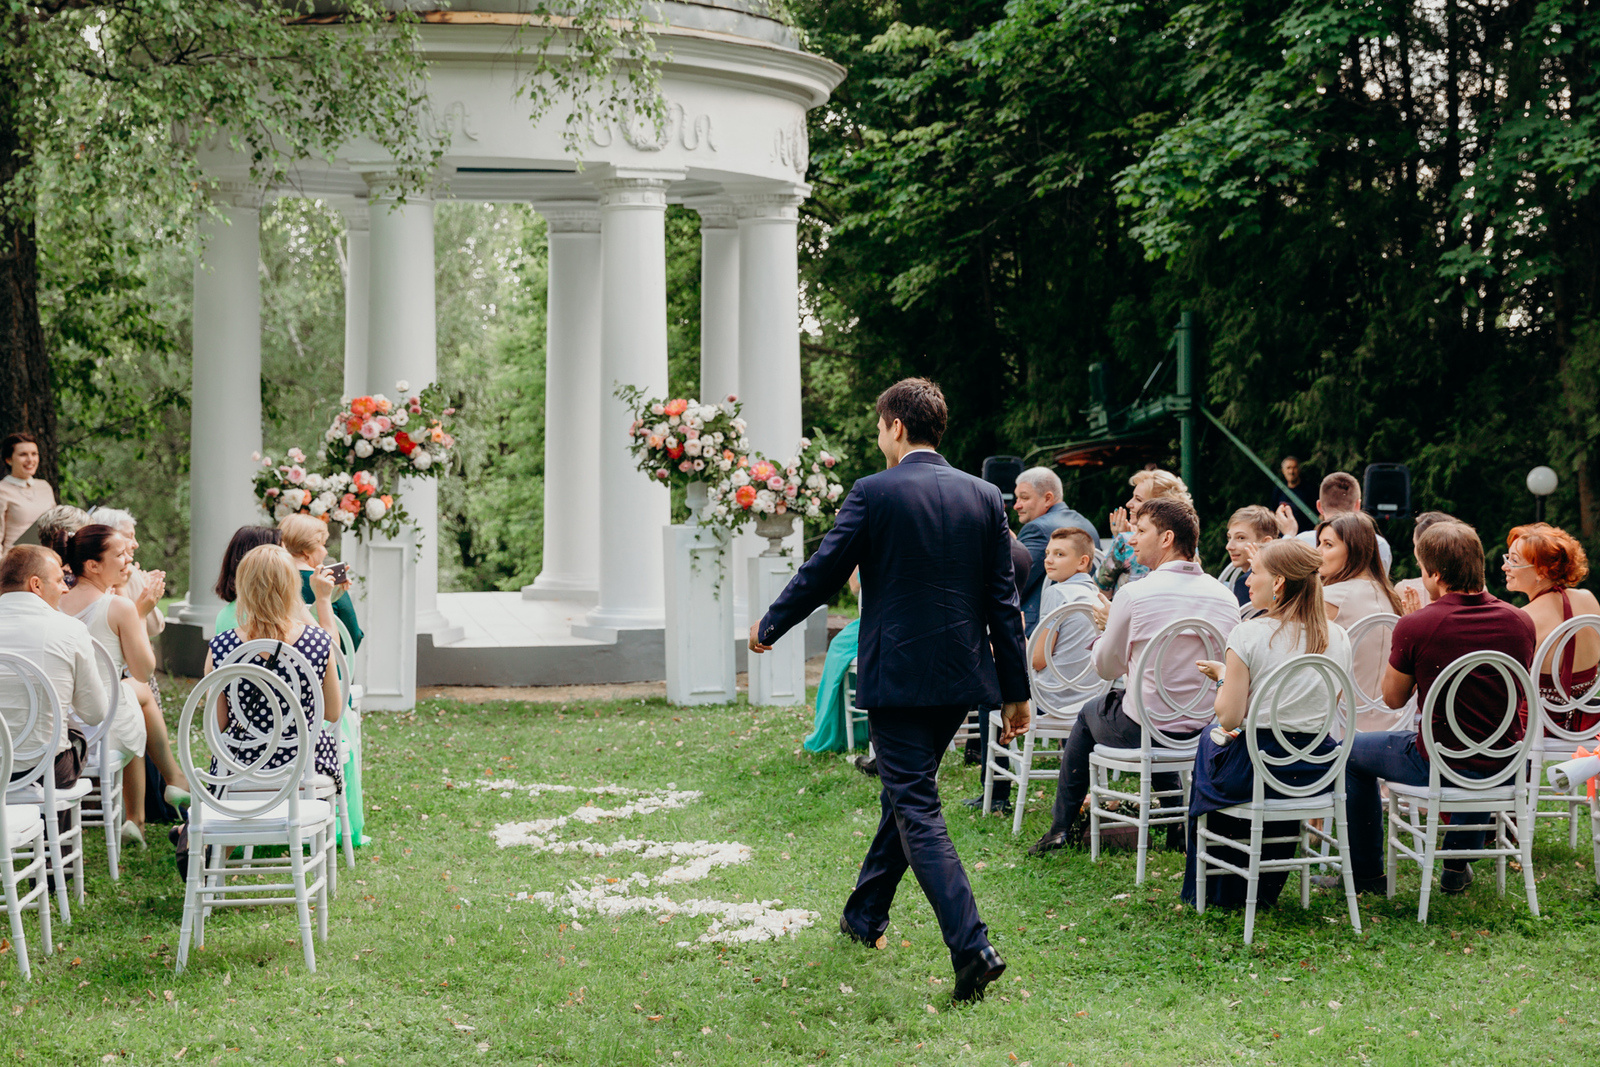 Романтичная классика: свадьба в садовой стилистике